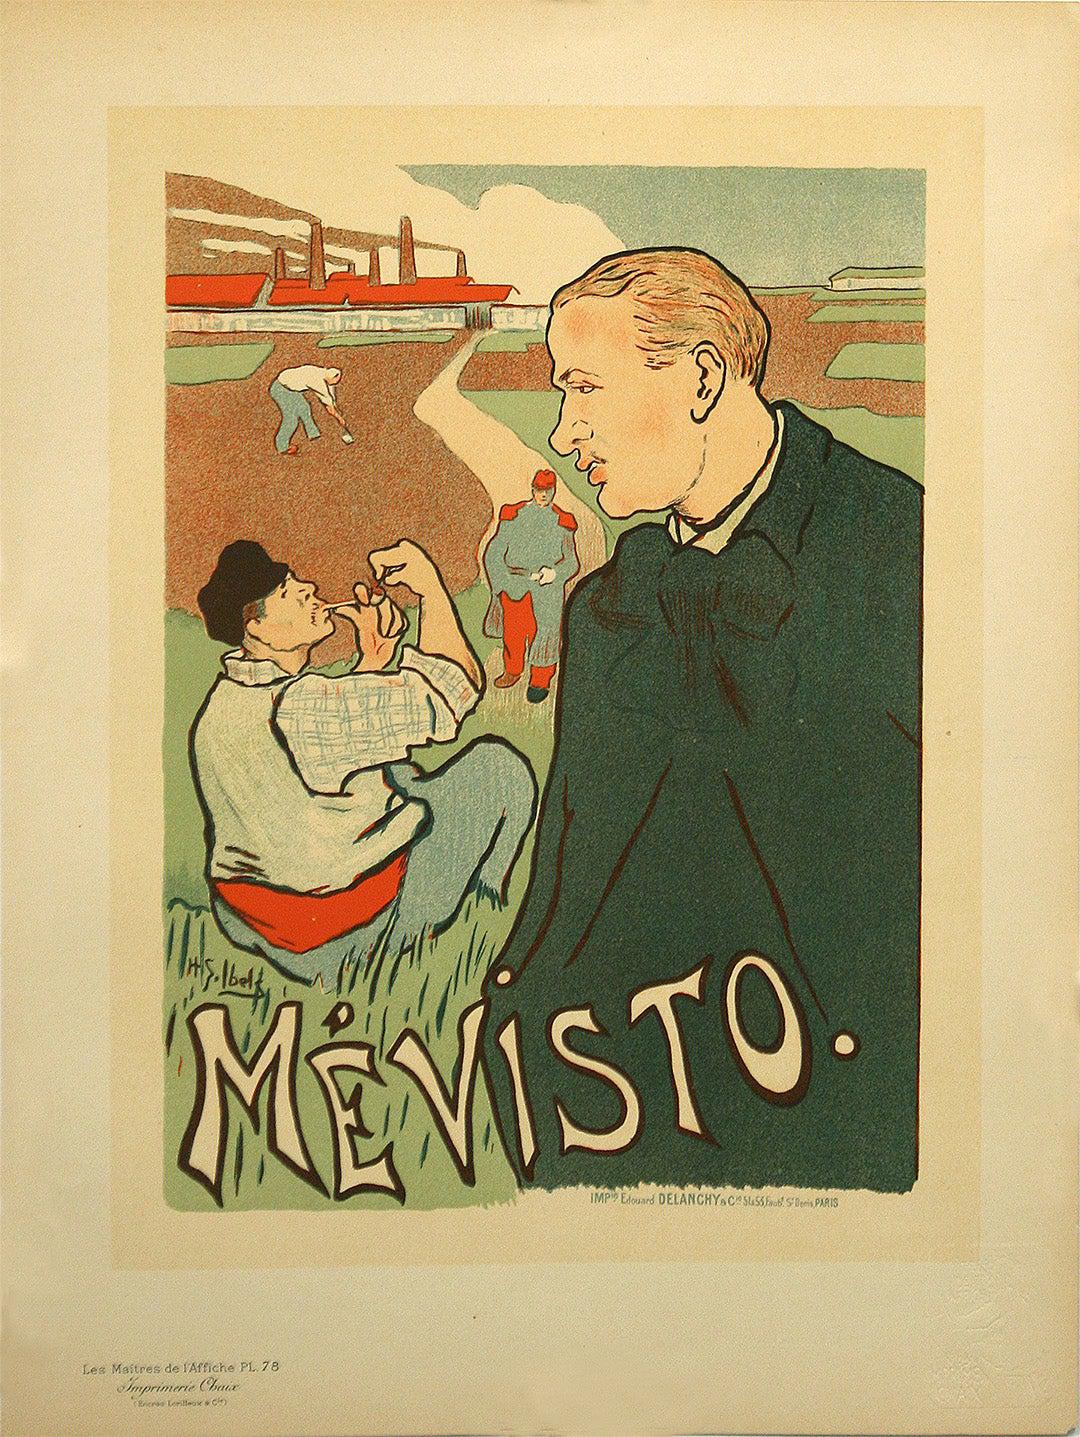 Original Maitre de l'Affiche Pl 78 Mevisto Poster by Henri-Gabriel Ibels 1897